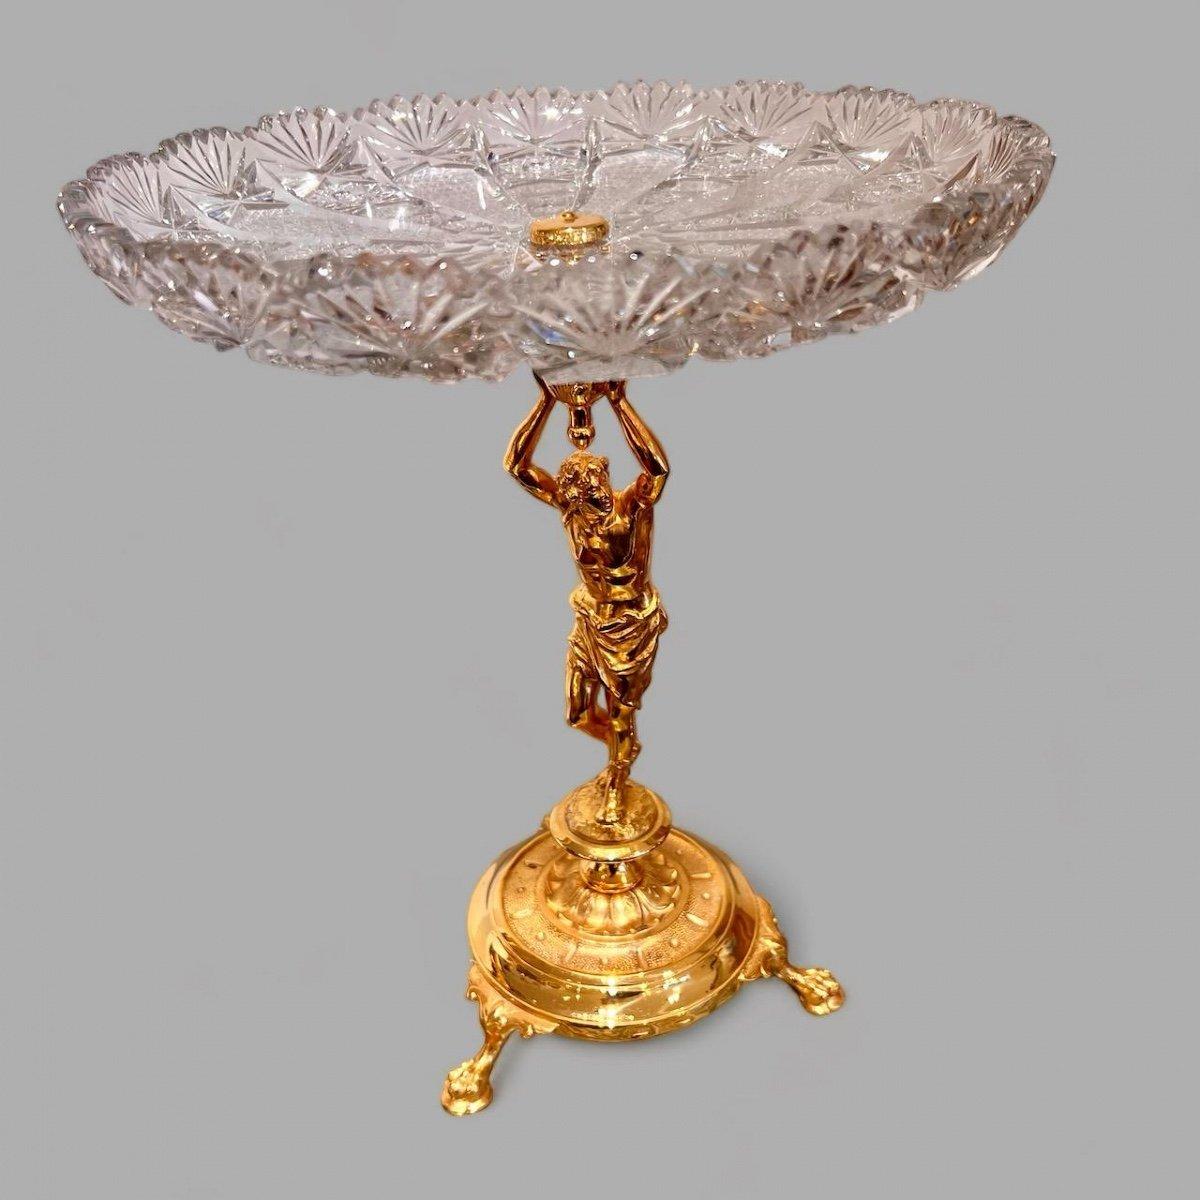 Wir präsentieren Ihnen diese exquisite dekorative Schale aus geschliffenem Kristall mit vergoldetem Bronzesockel aus der Zeit Napoleons III. im 19. Jahrhundert. Auf dem Sockel ist ein Mann in klassisch-griechischer Kleidung abgebildet, der die